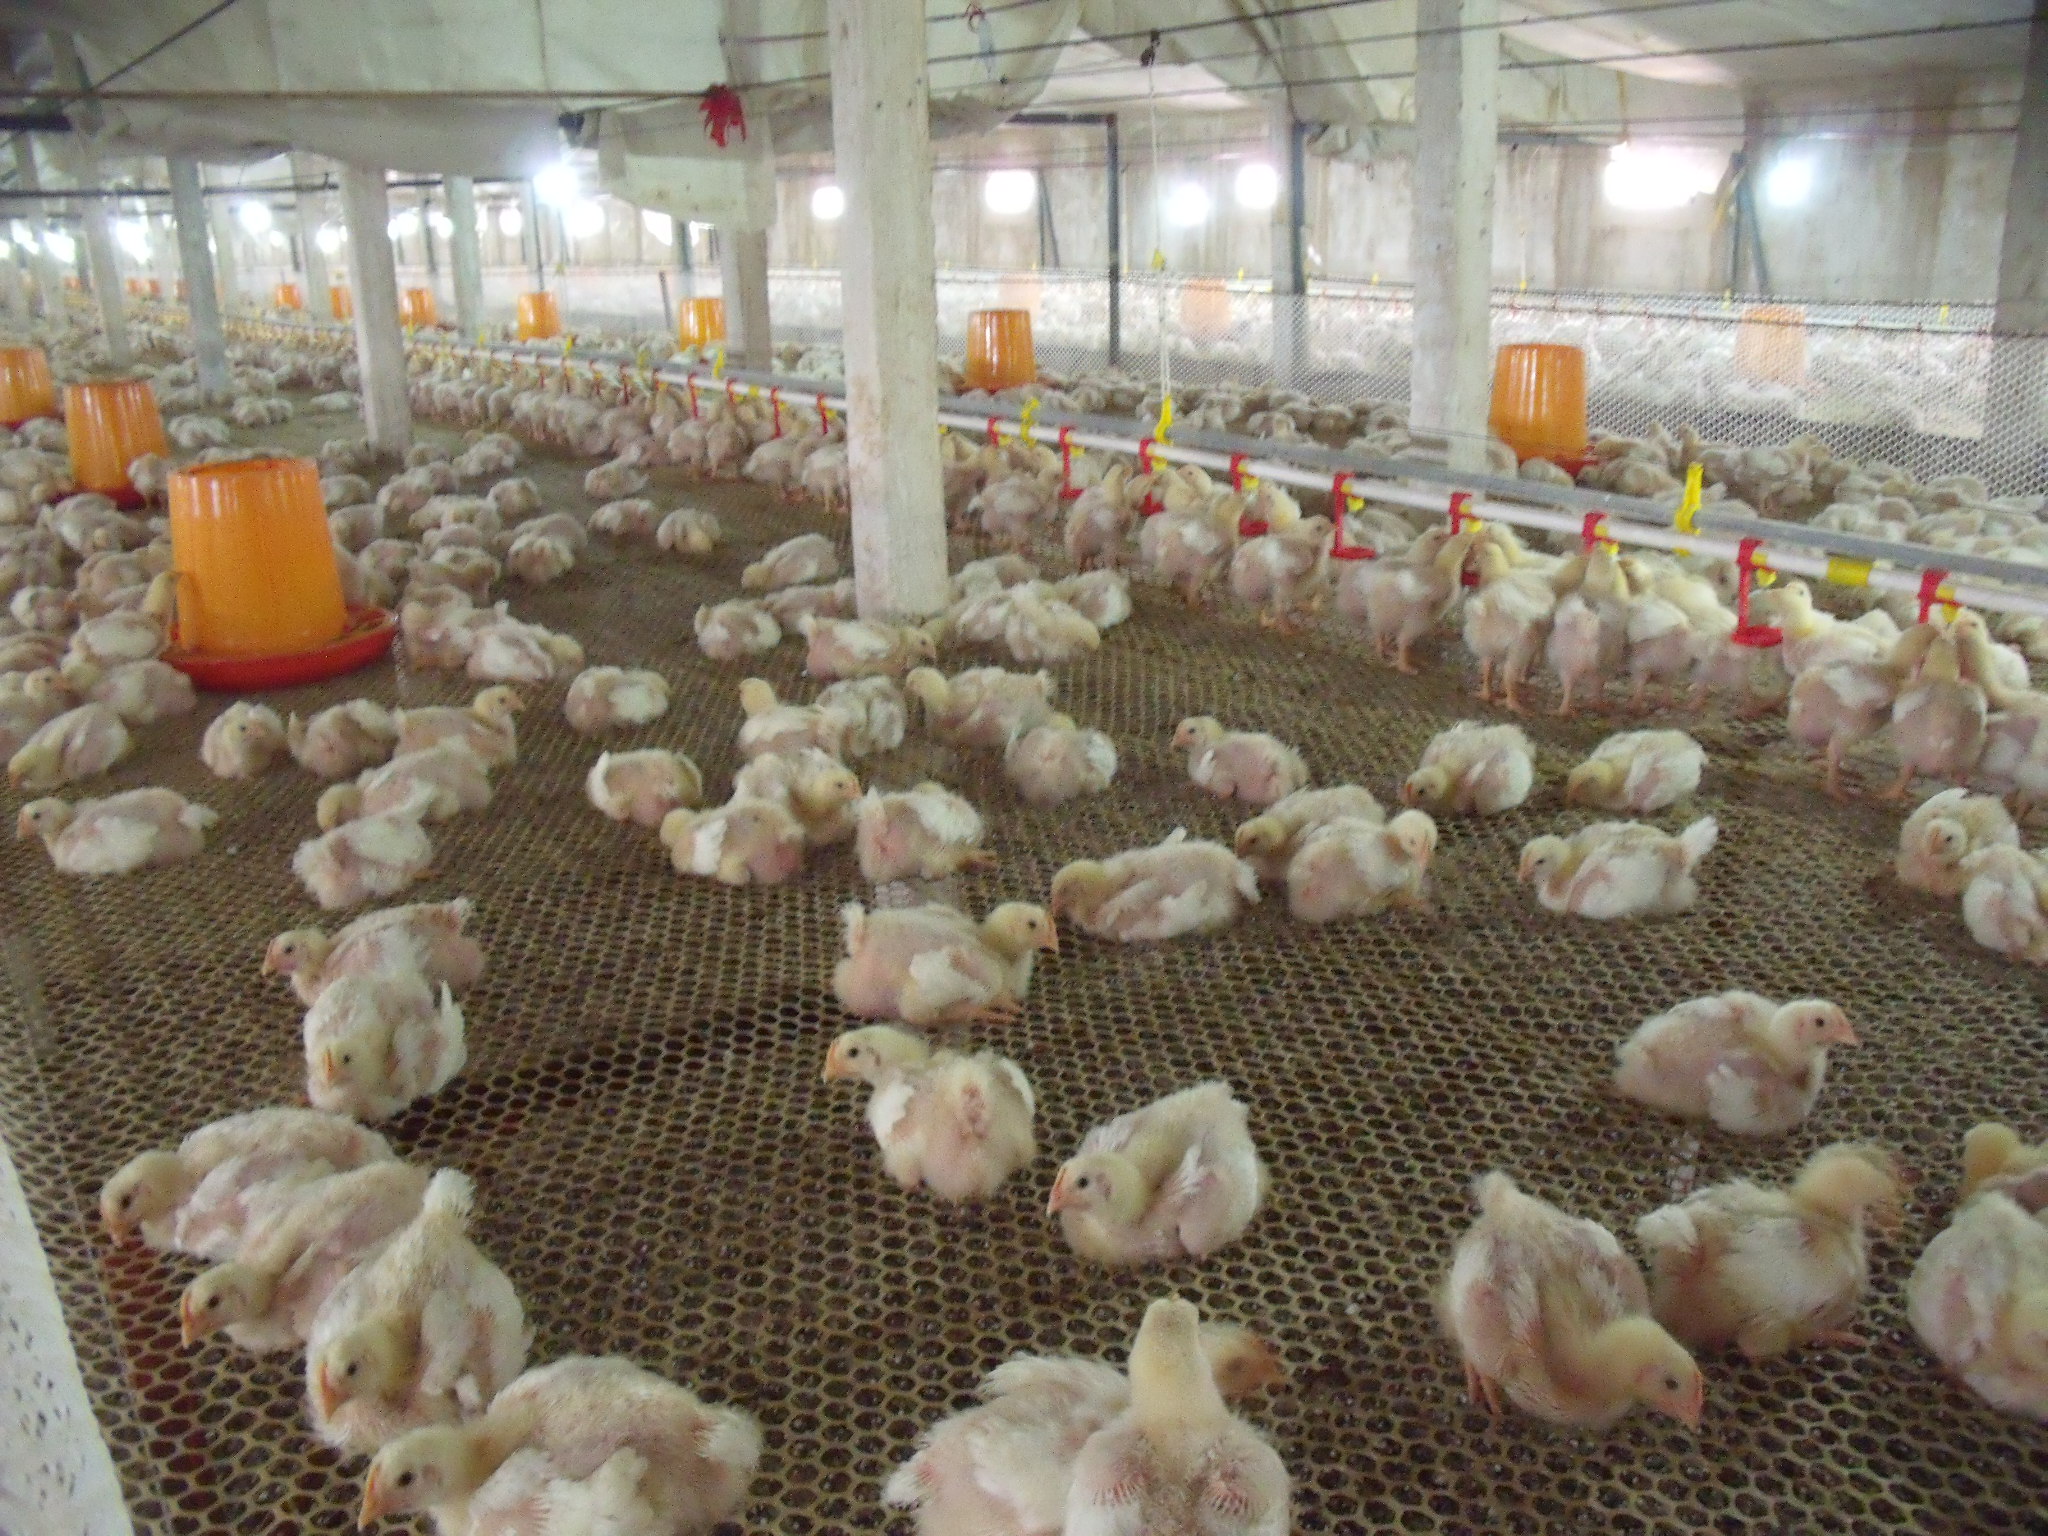 四川自贡大安第四代笼养式鸡棚建成投产 预计年出栏肉鸡26万羽以上__财经头条